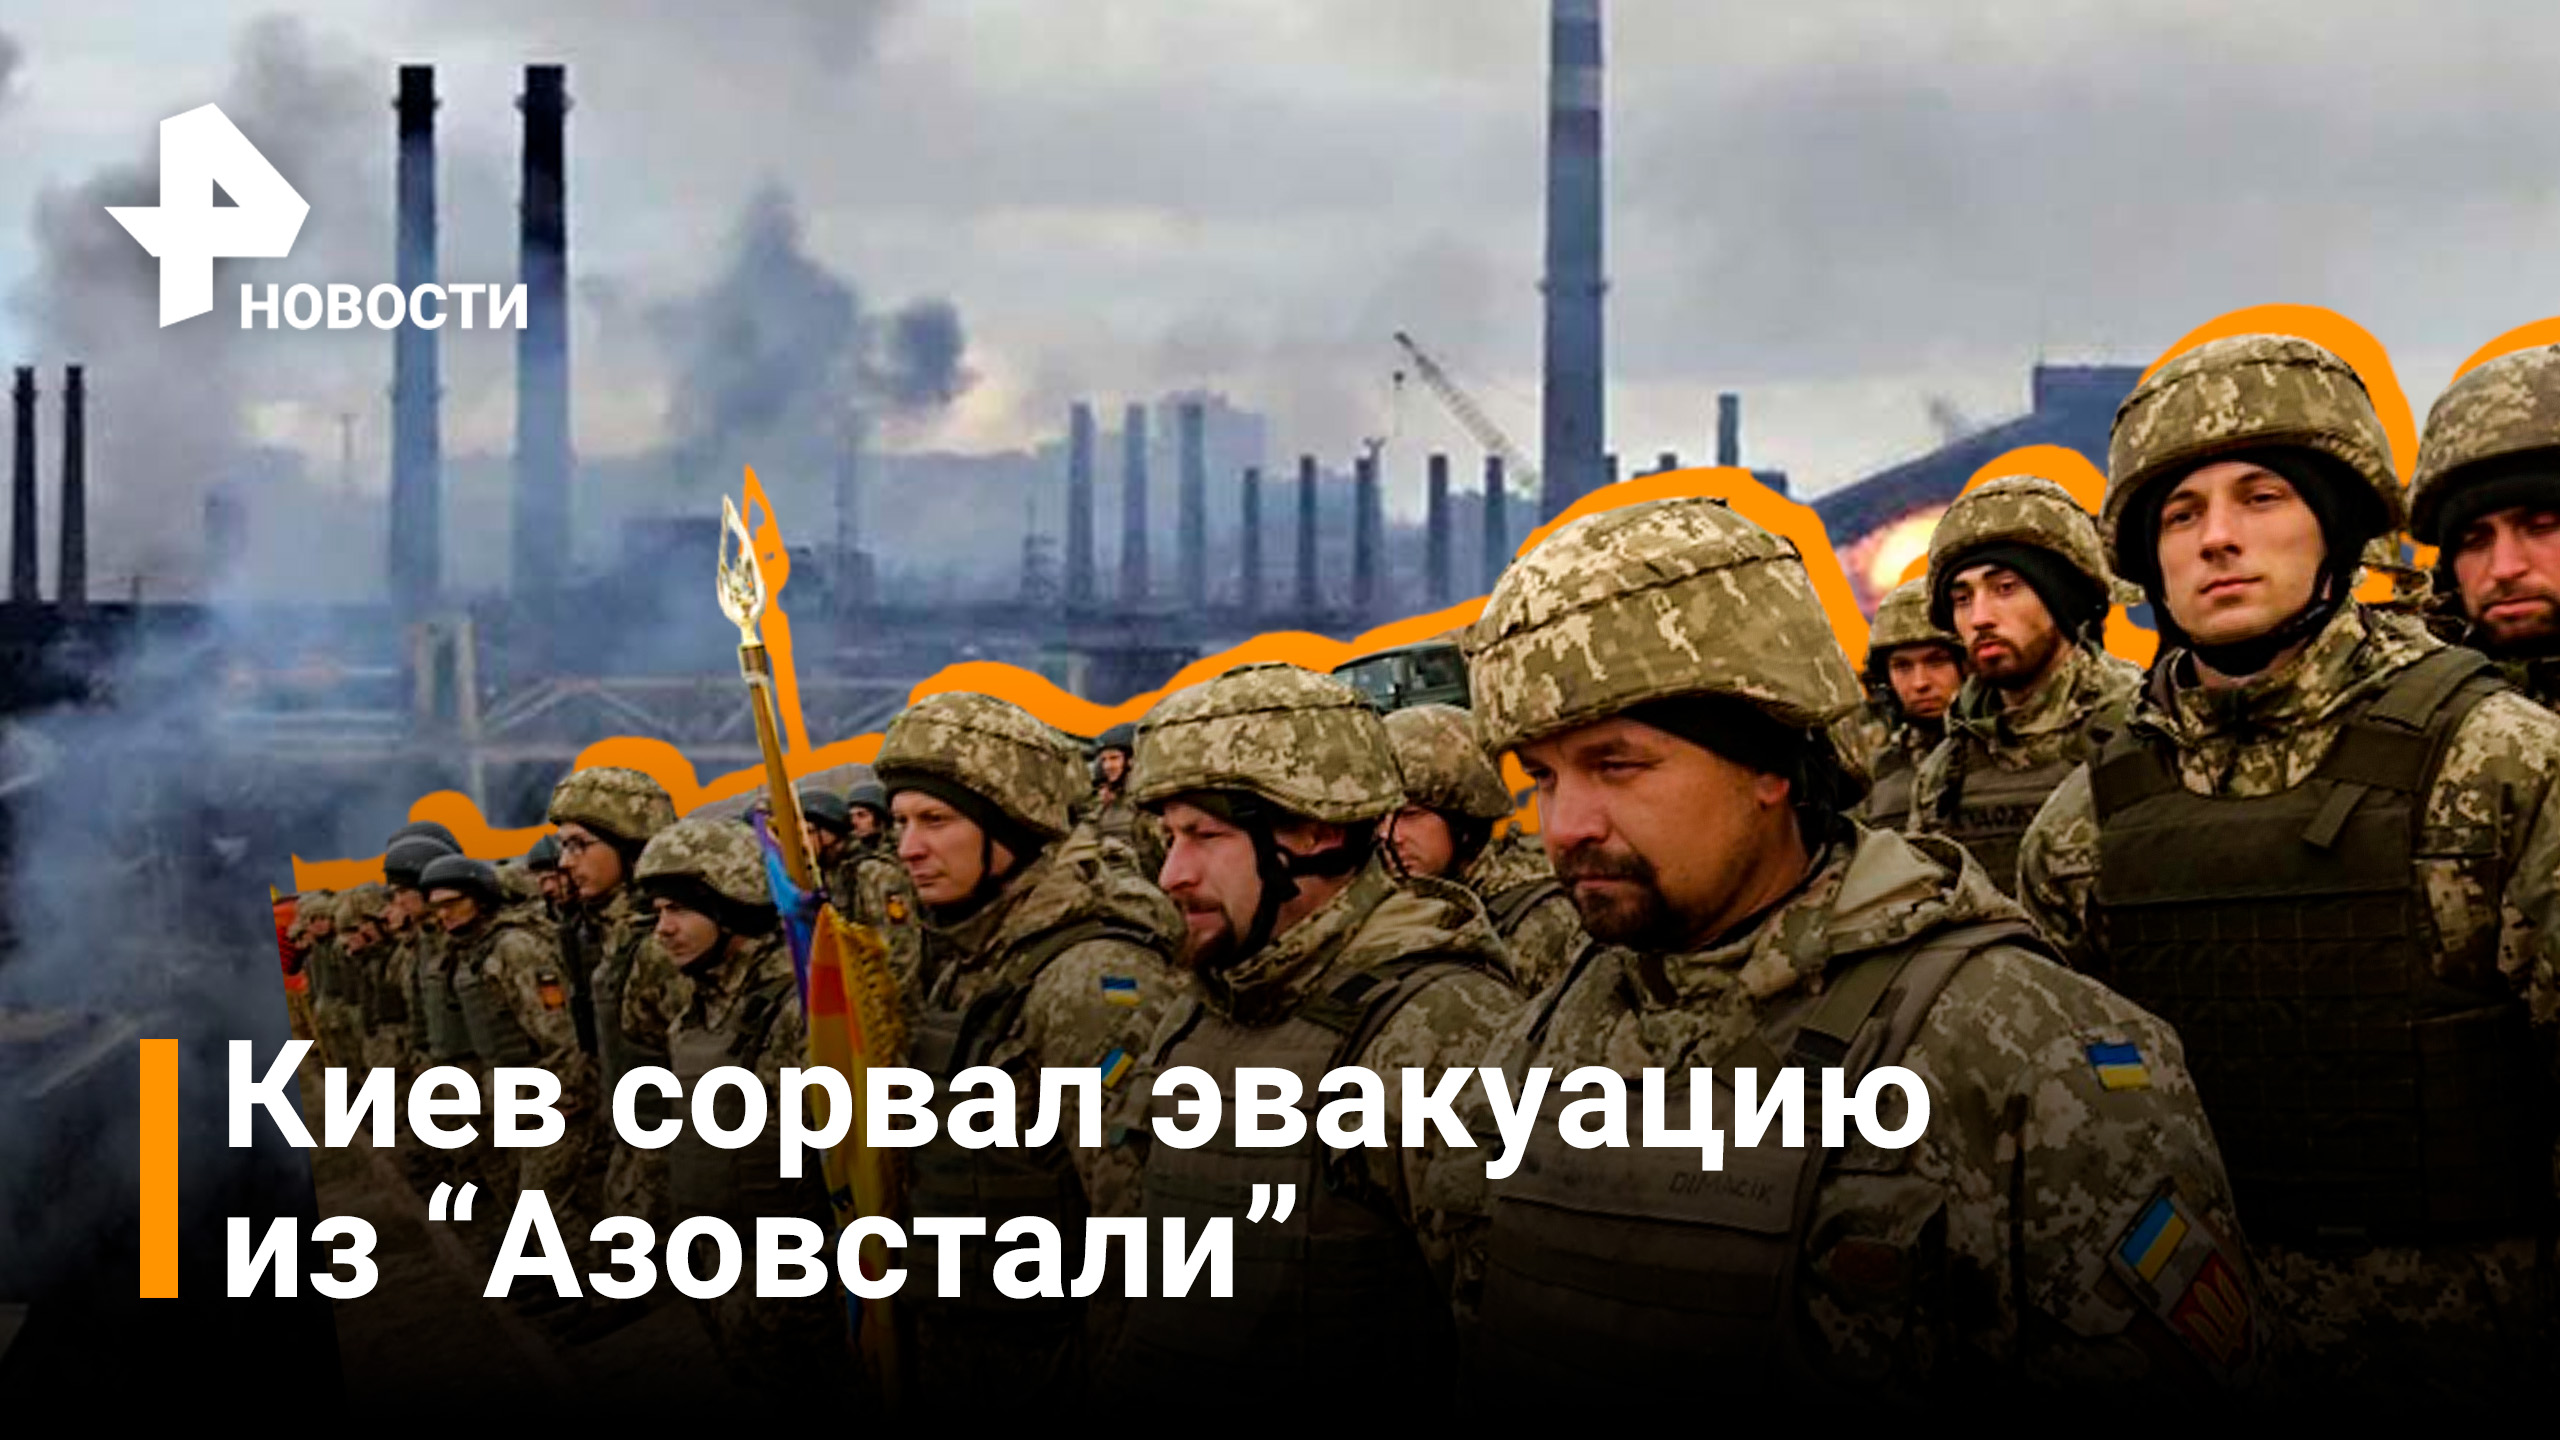 Киев сорвал эвакуацию с Азовсталя в Мариуполе / РЕН Новости